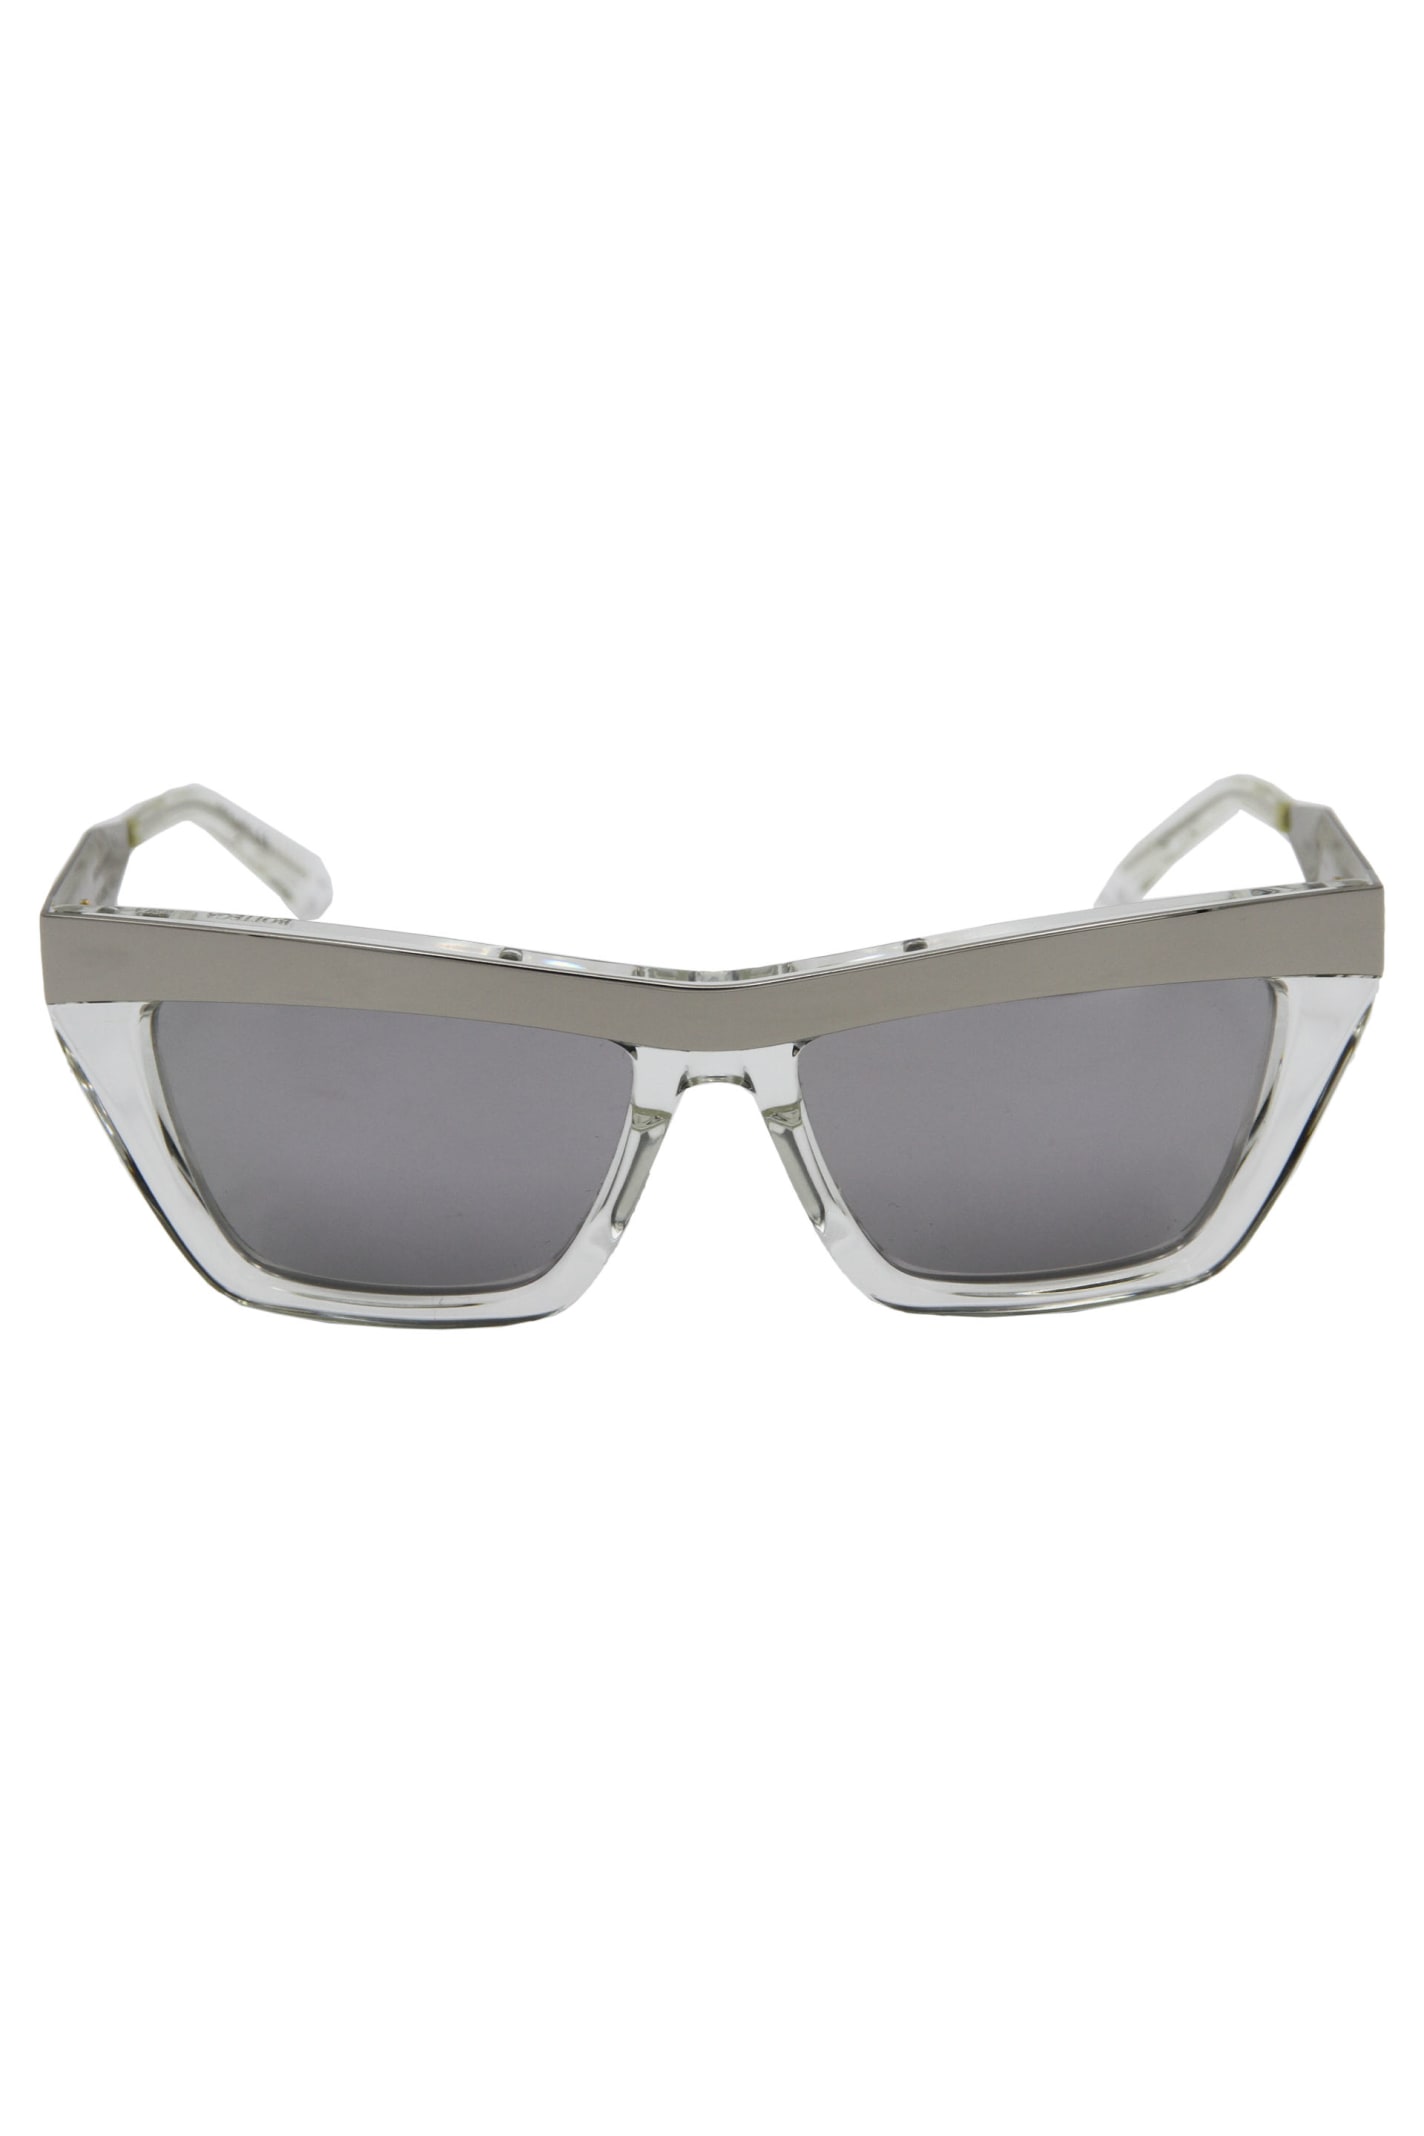 Bottega Veneta Squared Sunglasses In Grey